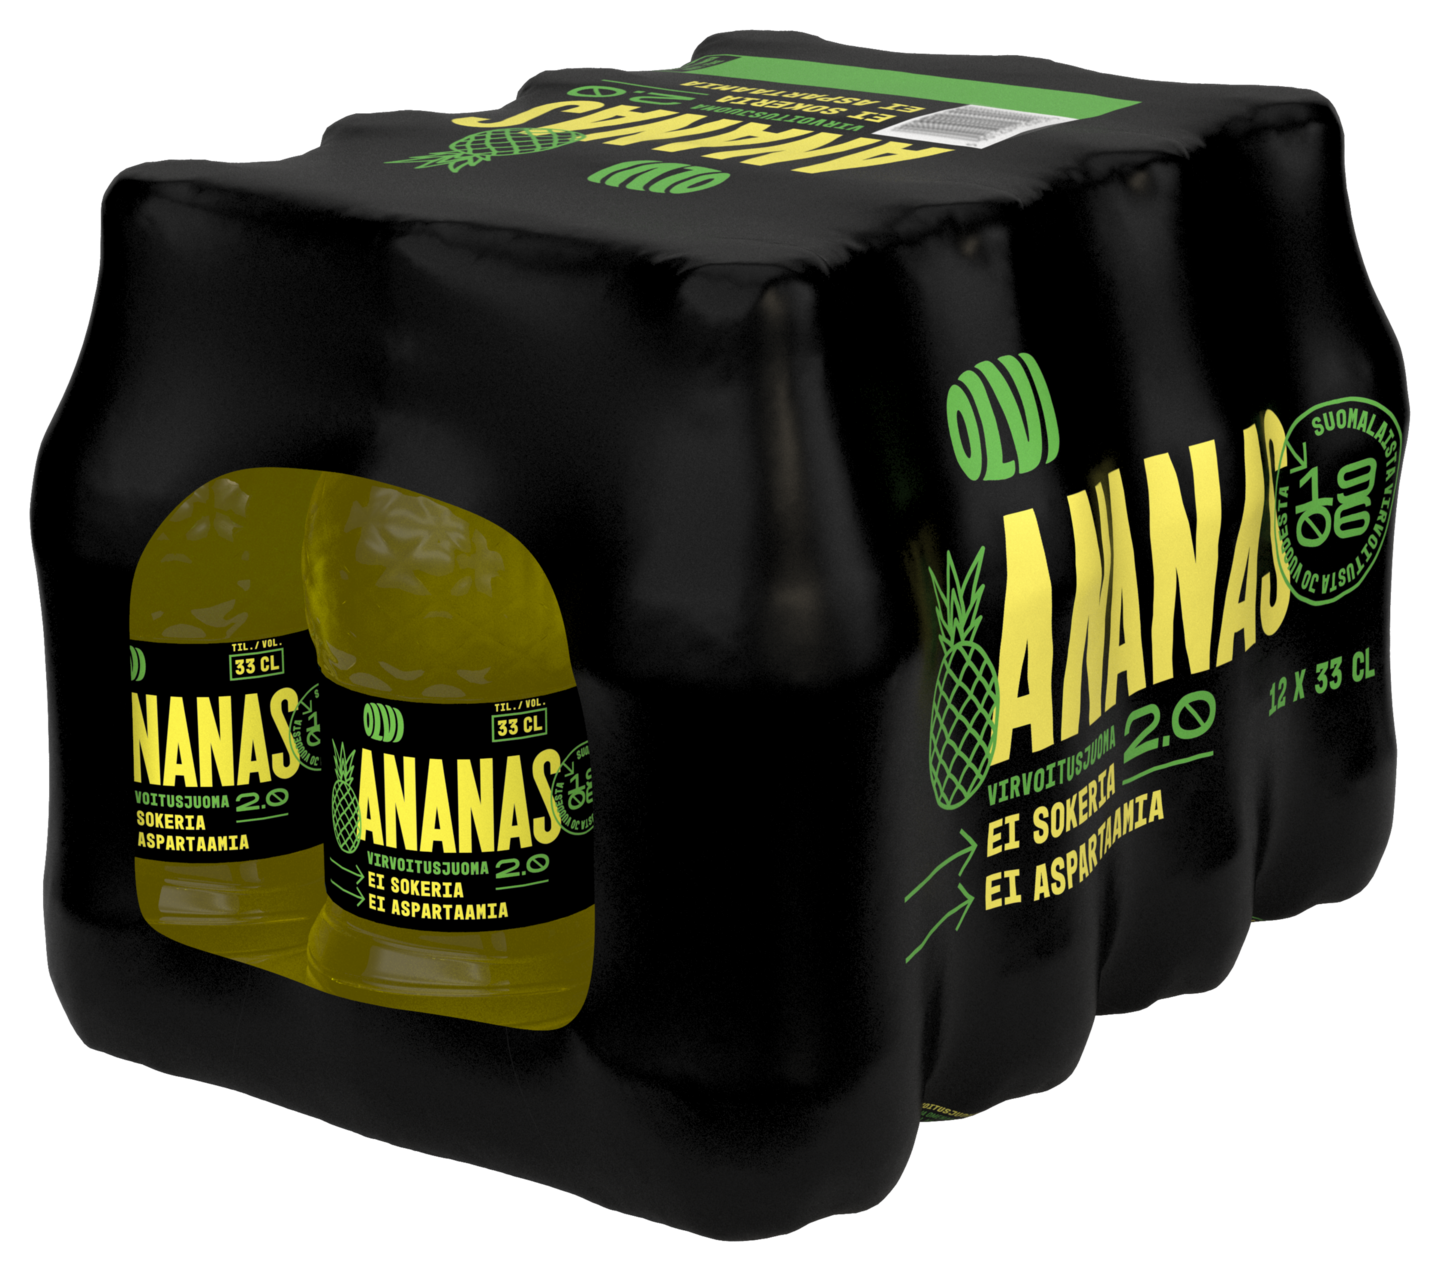 Olvi Ananas 2.0 sokeriton virvoitusjuoma 0,33l 12-pack